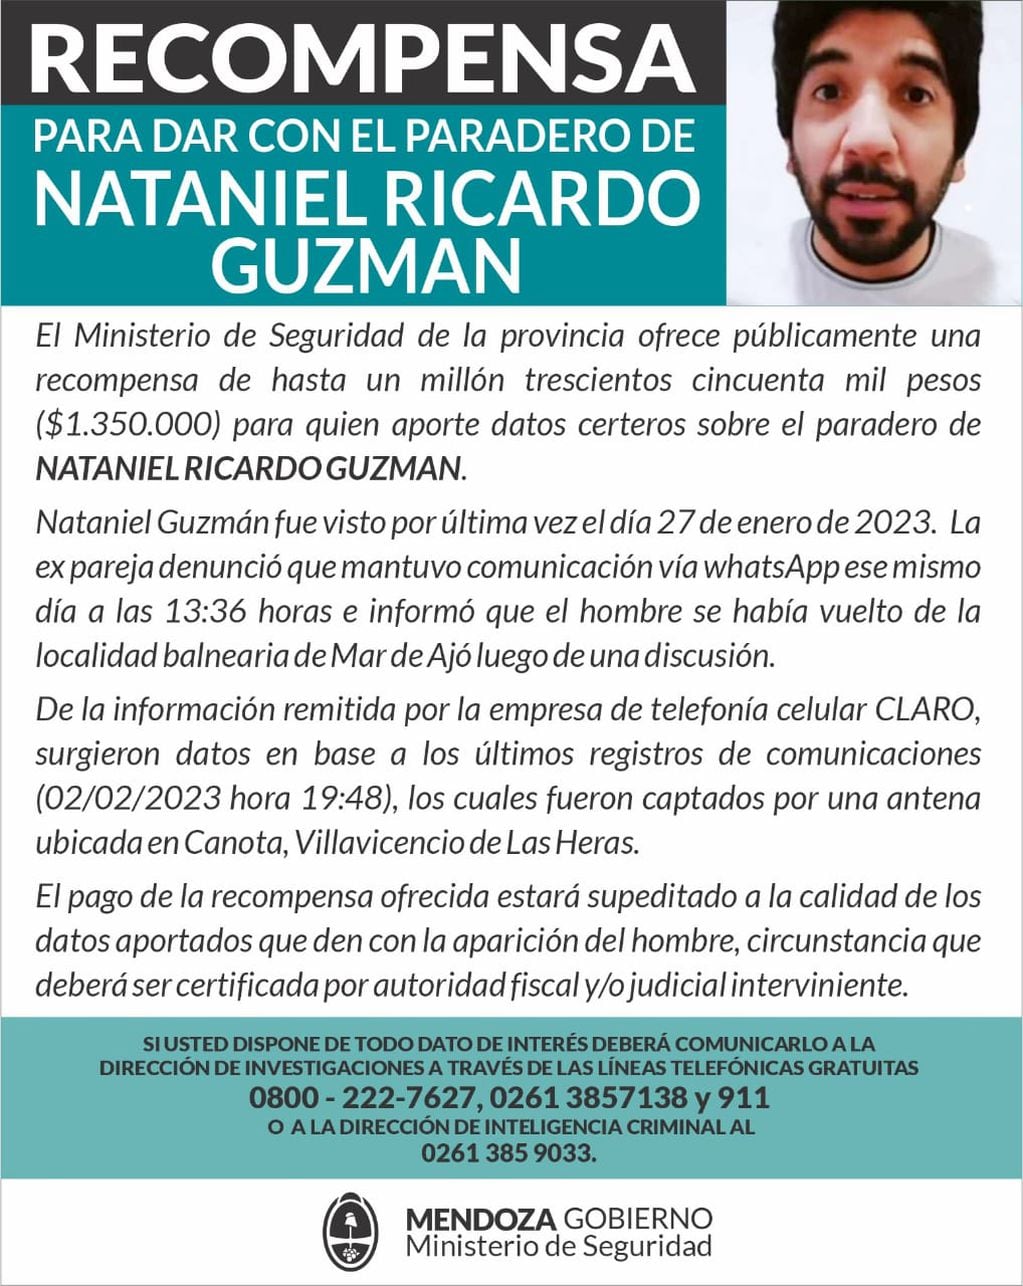 El Ministerio de Seguridad ofrece una gran recompensa por el abogado Nataniel Guzmán.